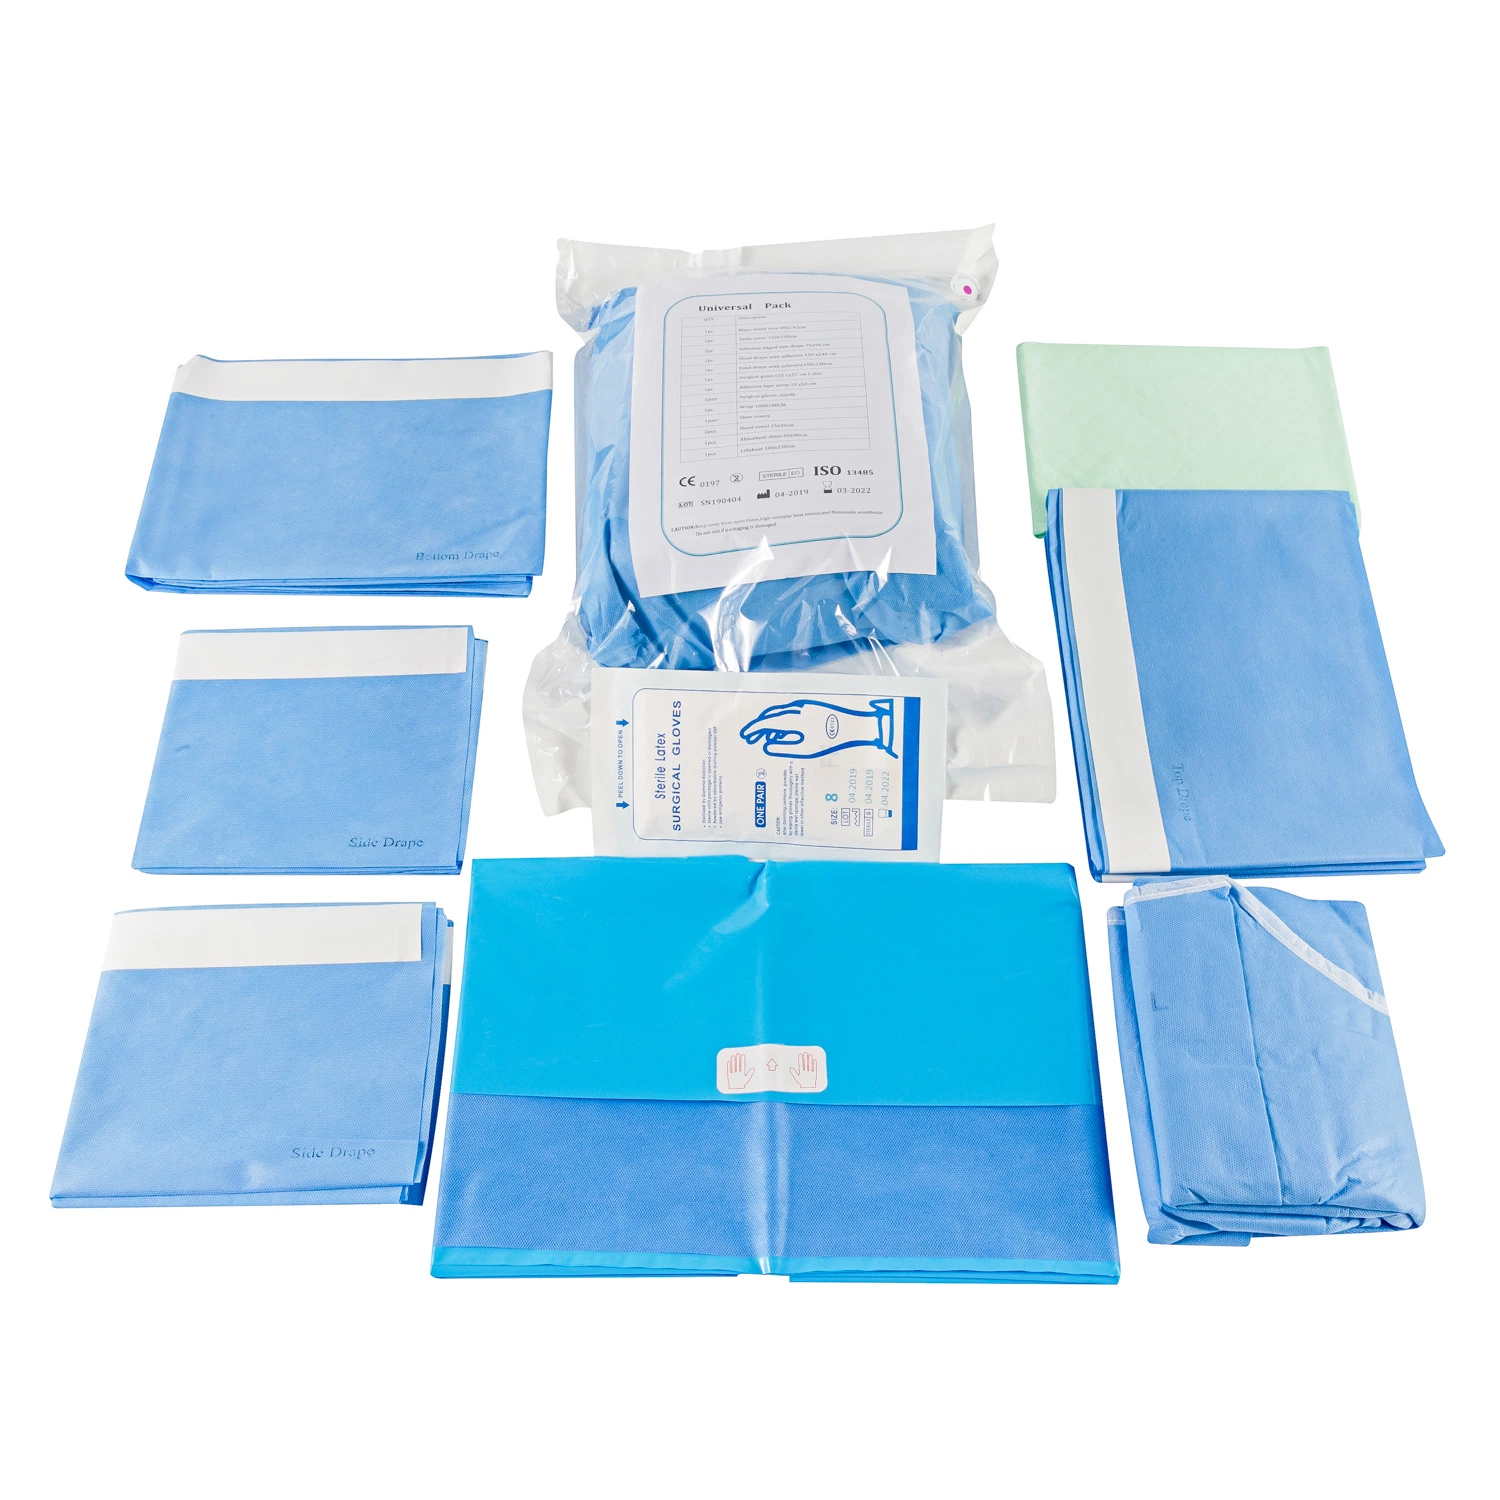 Emballage de film adhésif chirurgical ophtalmique stérile à usage médical et à usage unique